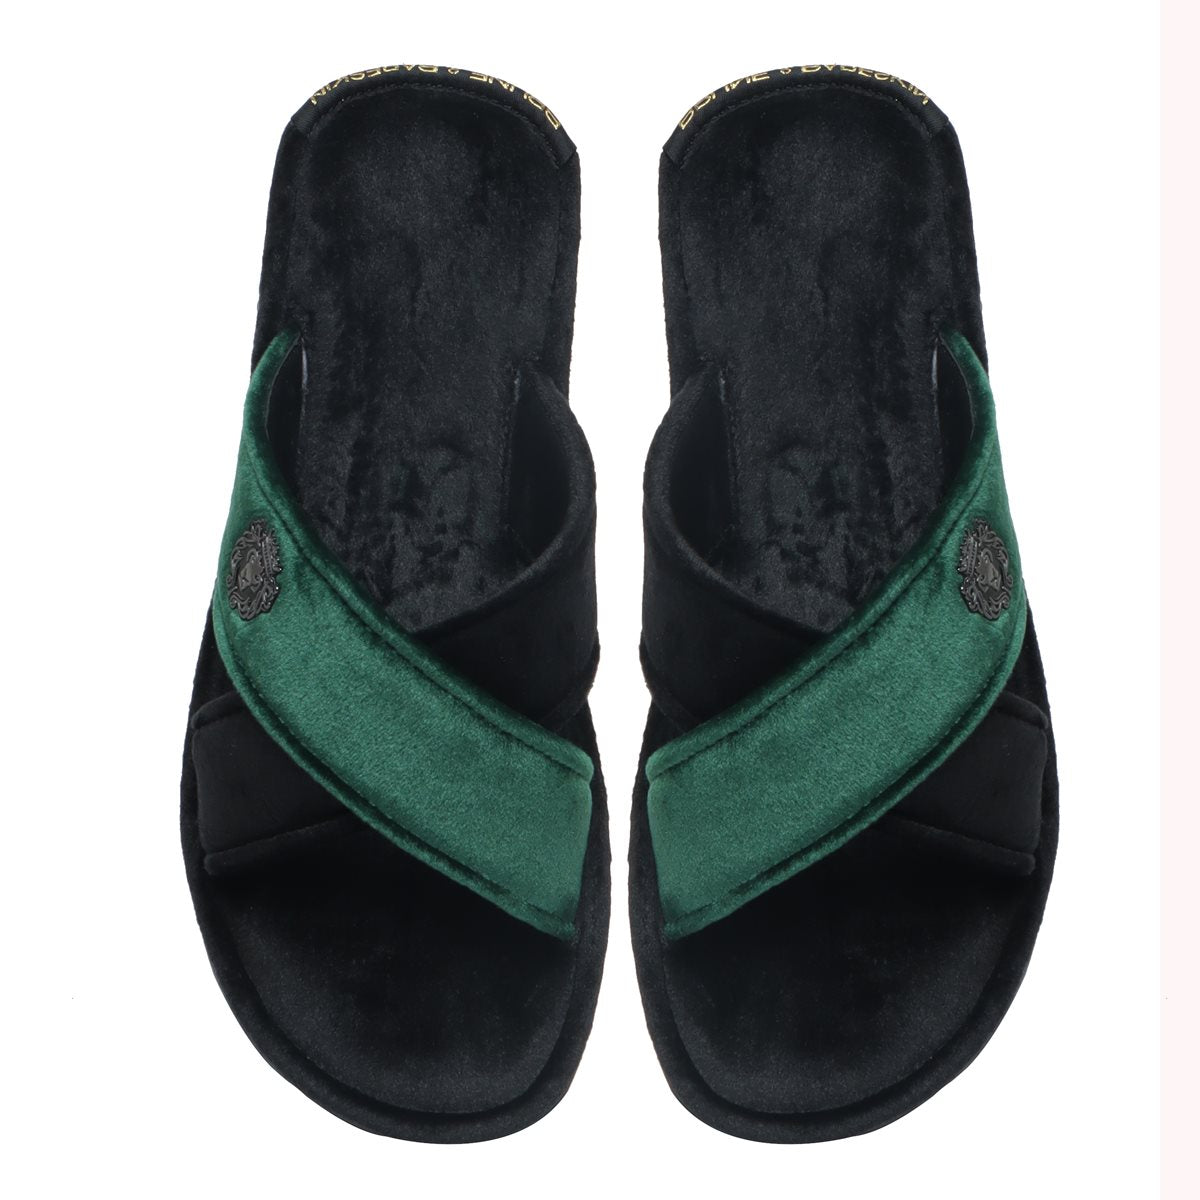 Black-Green Cross Straps Comfy Velvet Slide-in Slippers By Brune & Bareskin